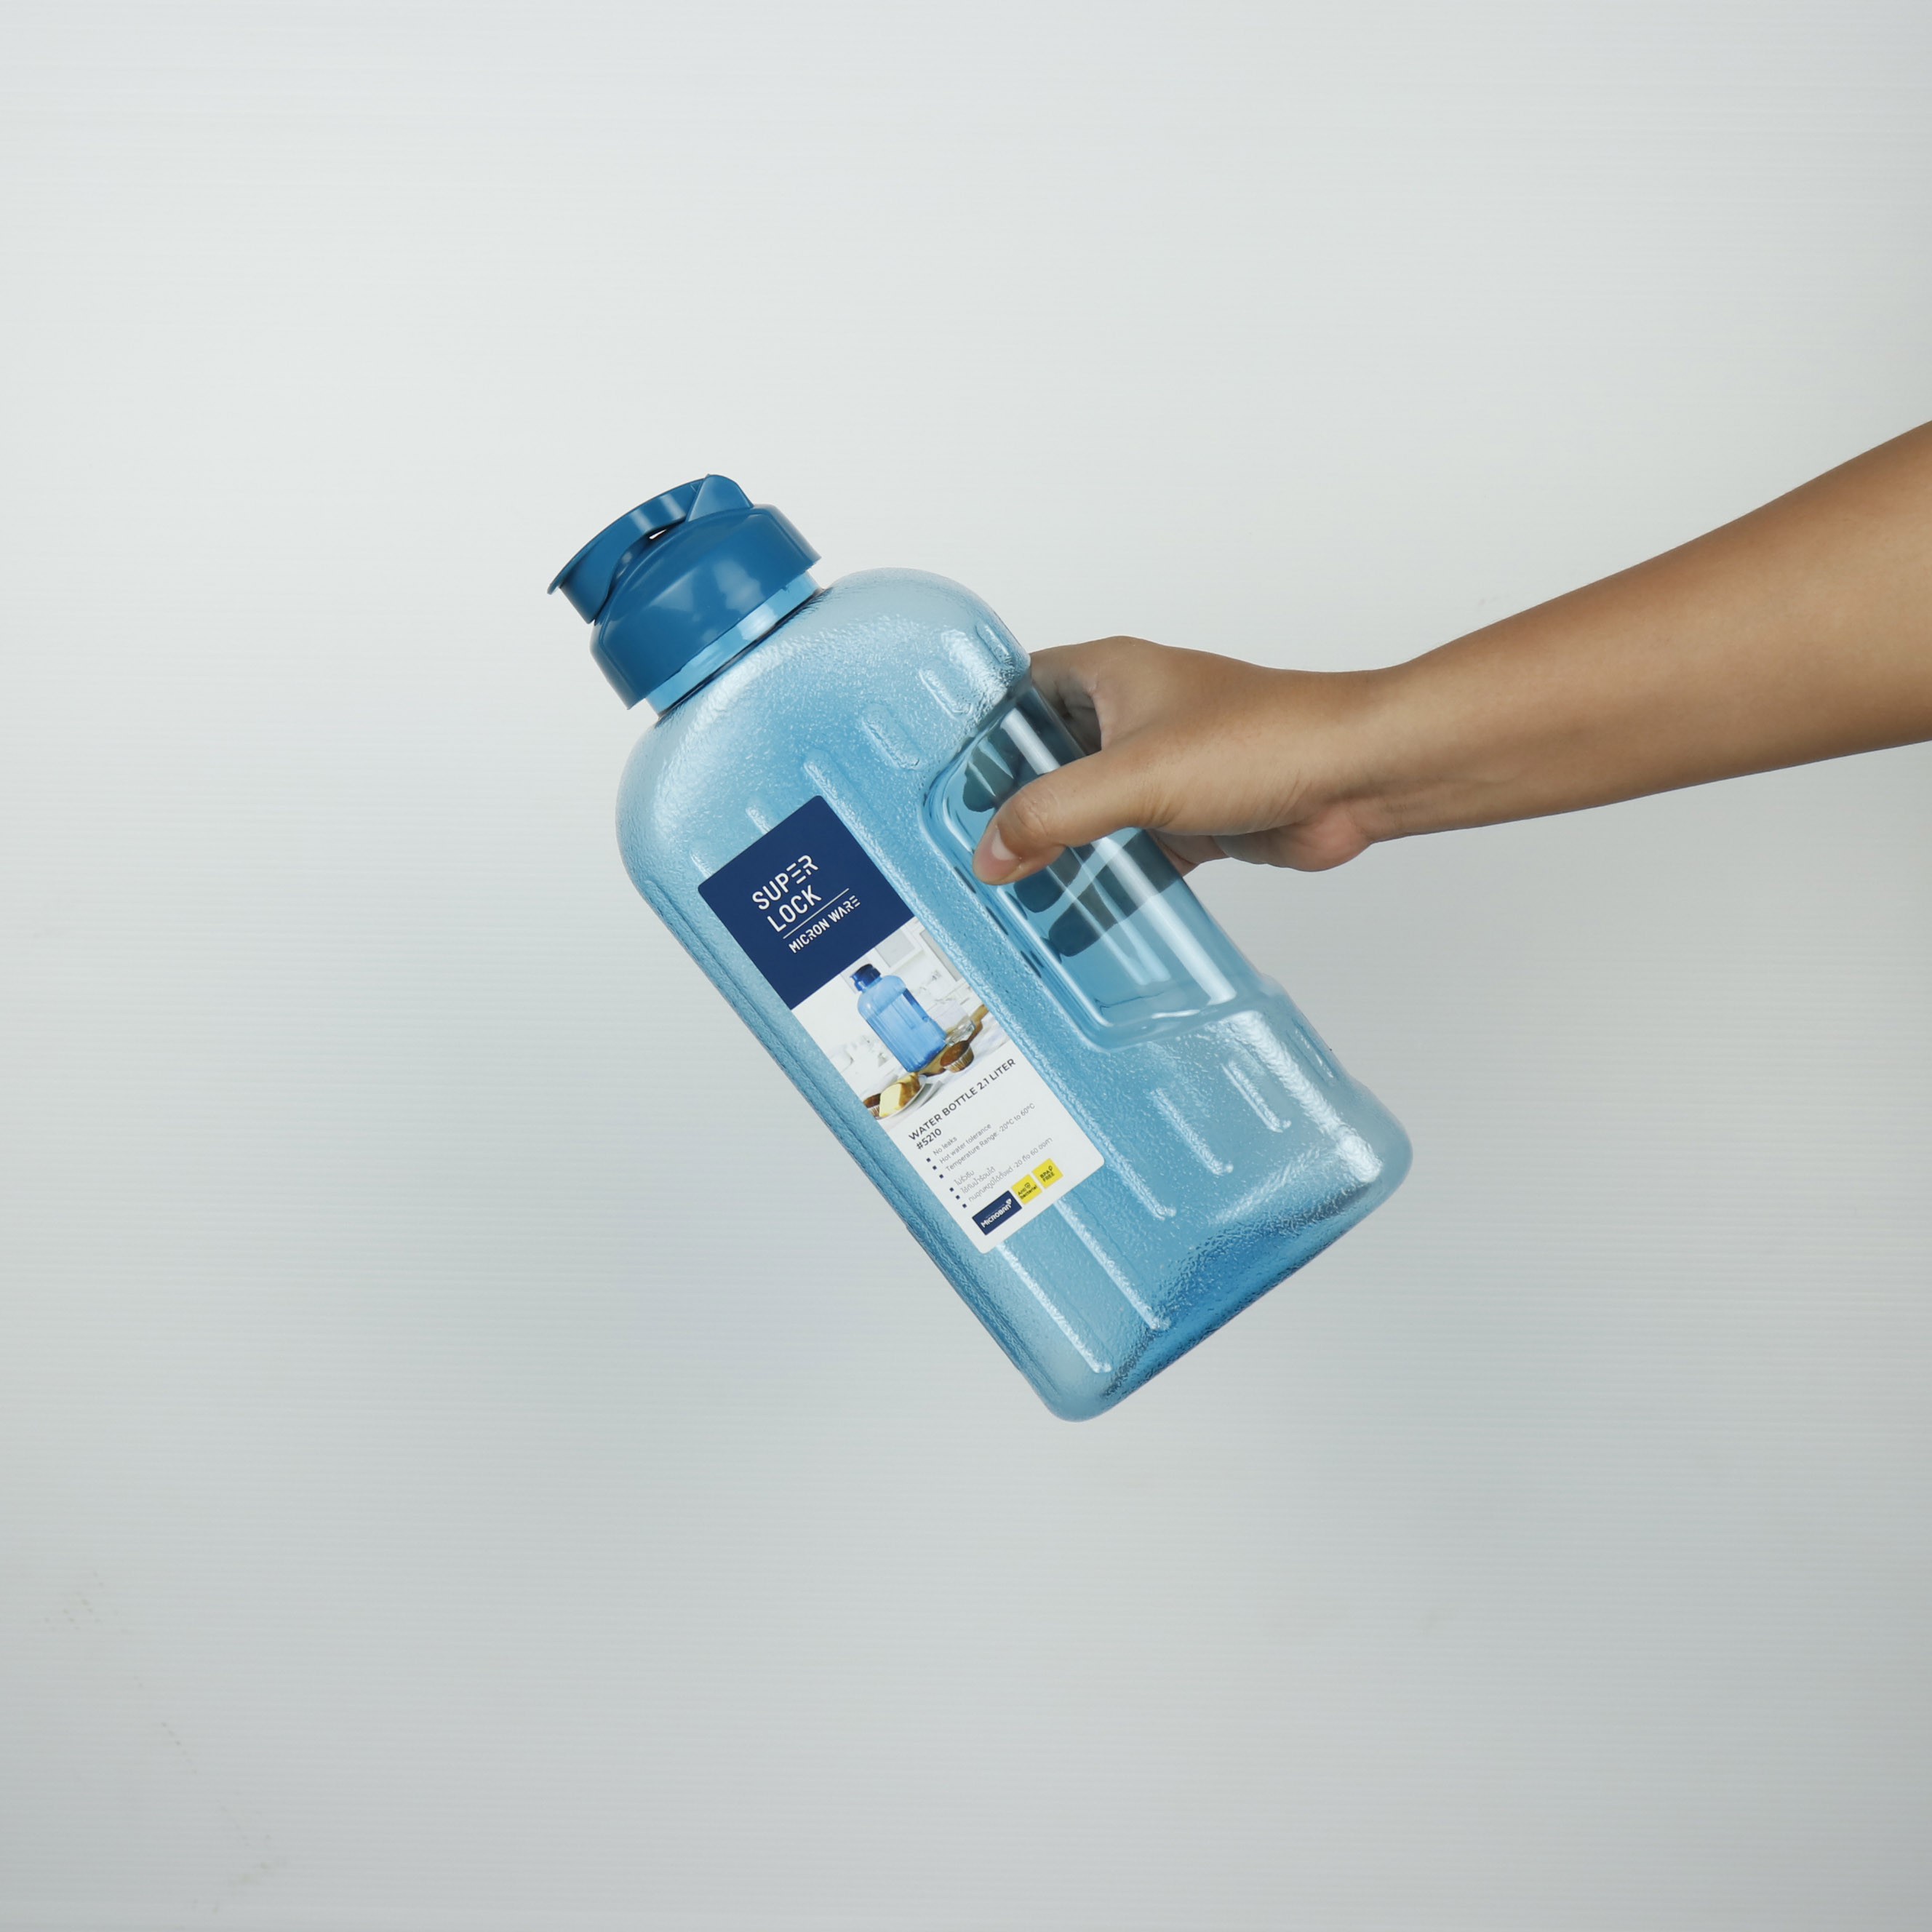 ขวดน้ำ พลาสติกใส ฝาจุก ร้อน เย็น # 5210 ซุปเปอร์ล็อค super lock 2100 ml water bottle